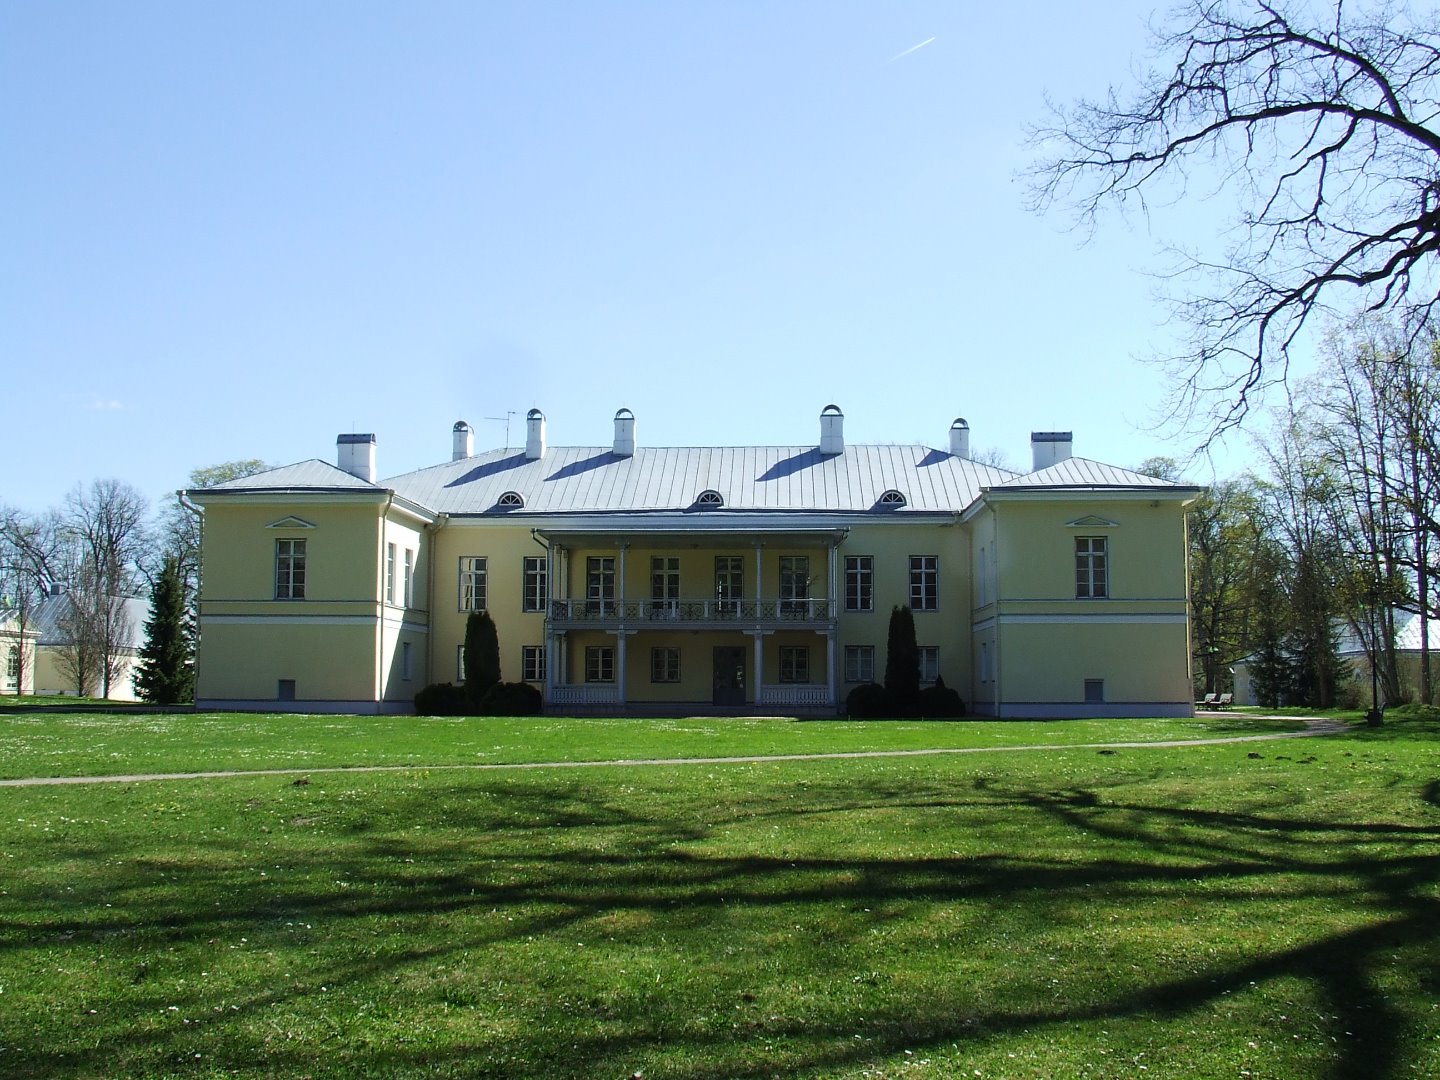 Virumaa, Jõhvi khk, Mäetaguse manor 1912 rephoto